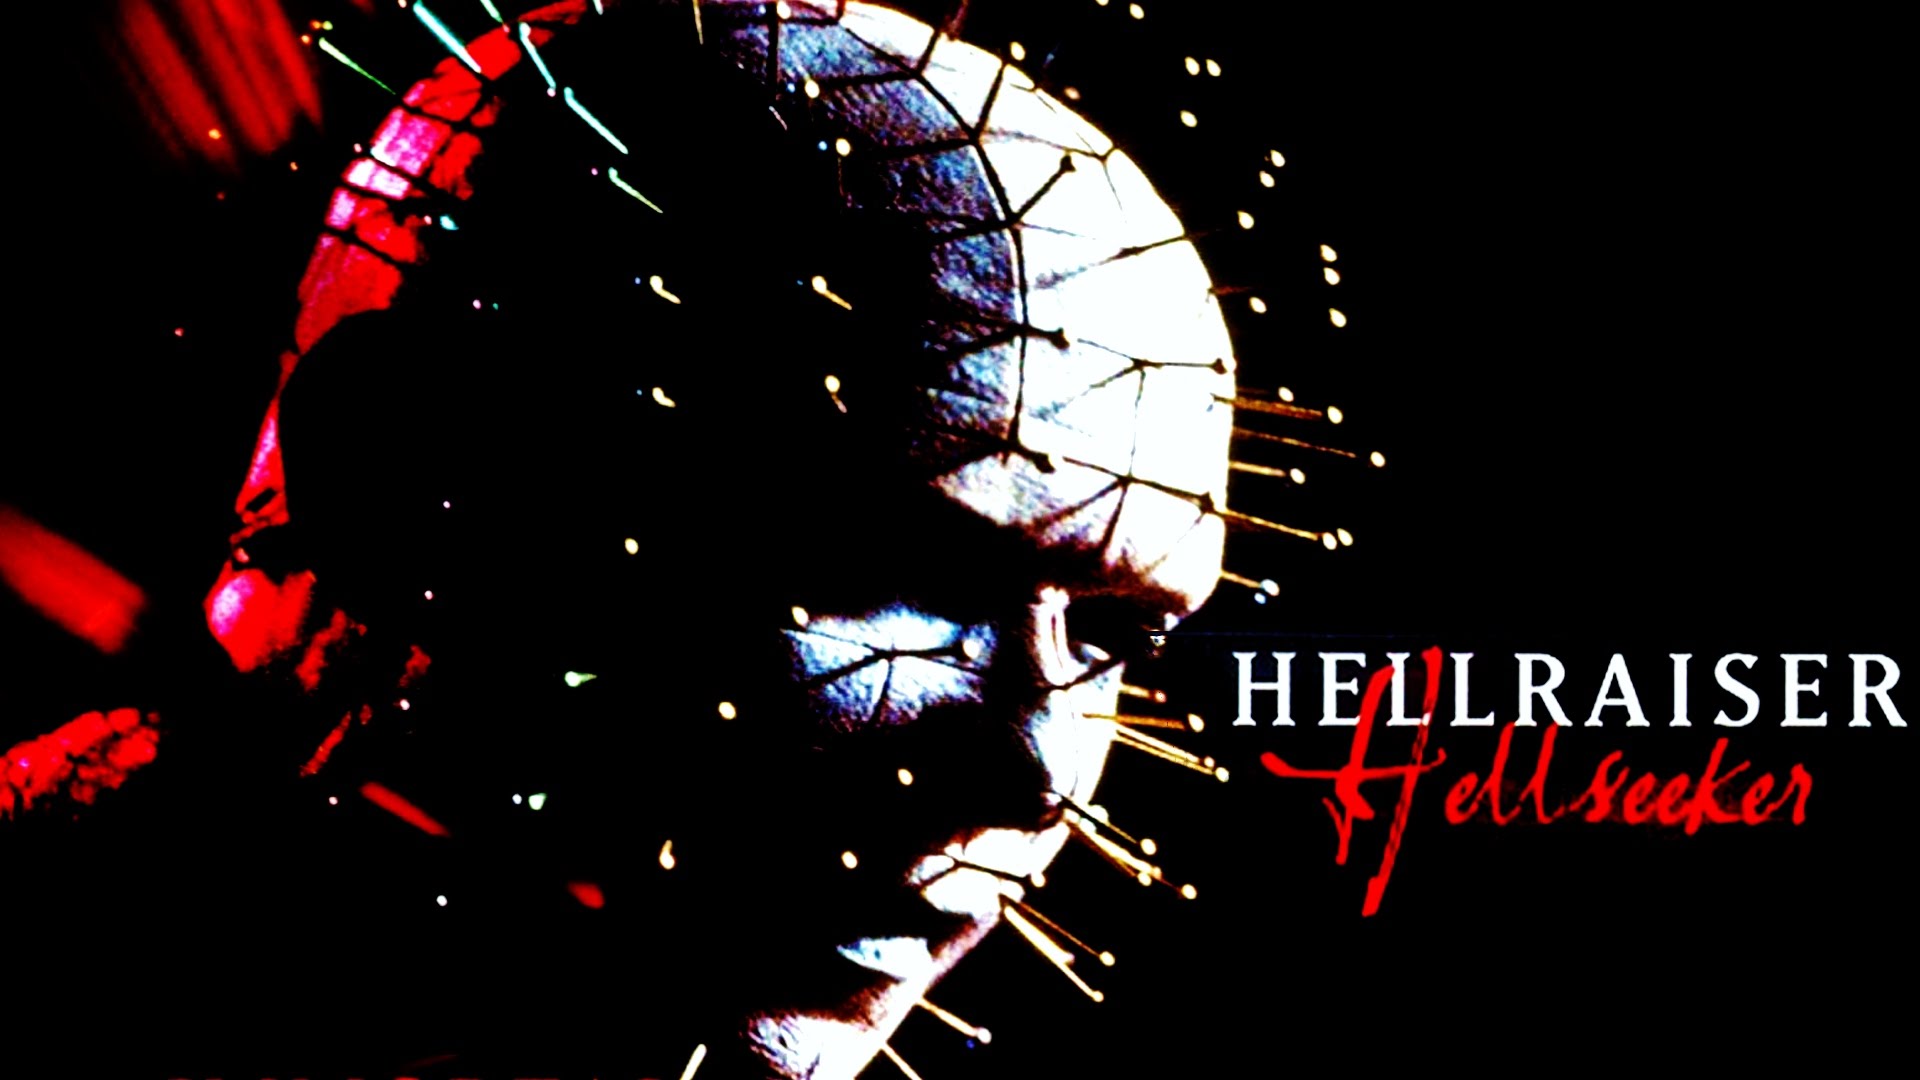 [30 Days of Halloween] Hellraiser: Hellseeker (2002) Review